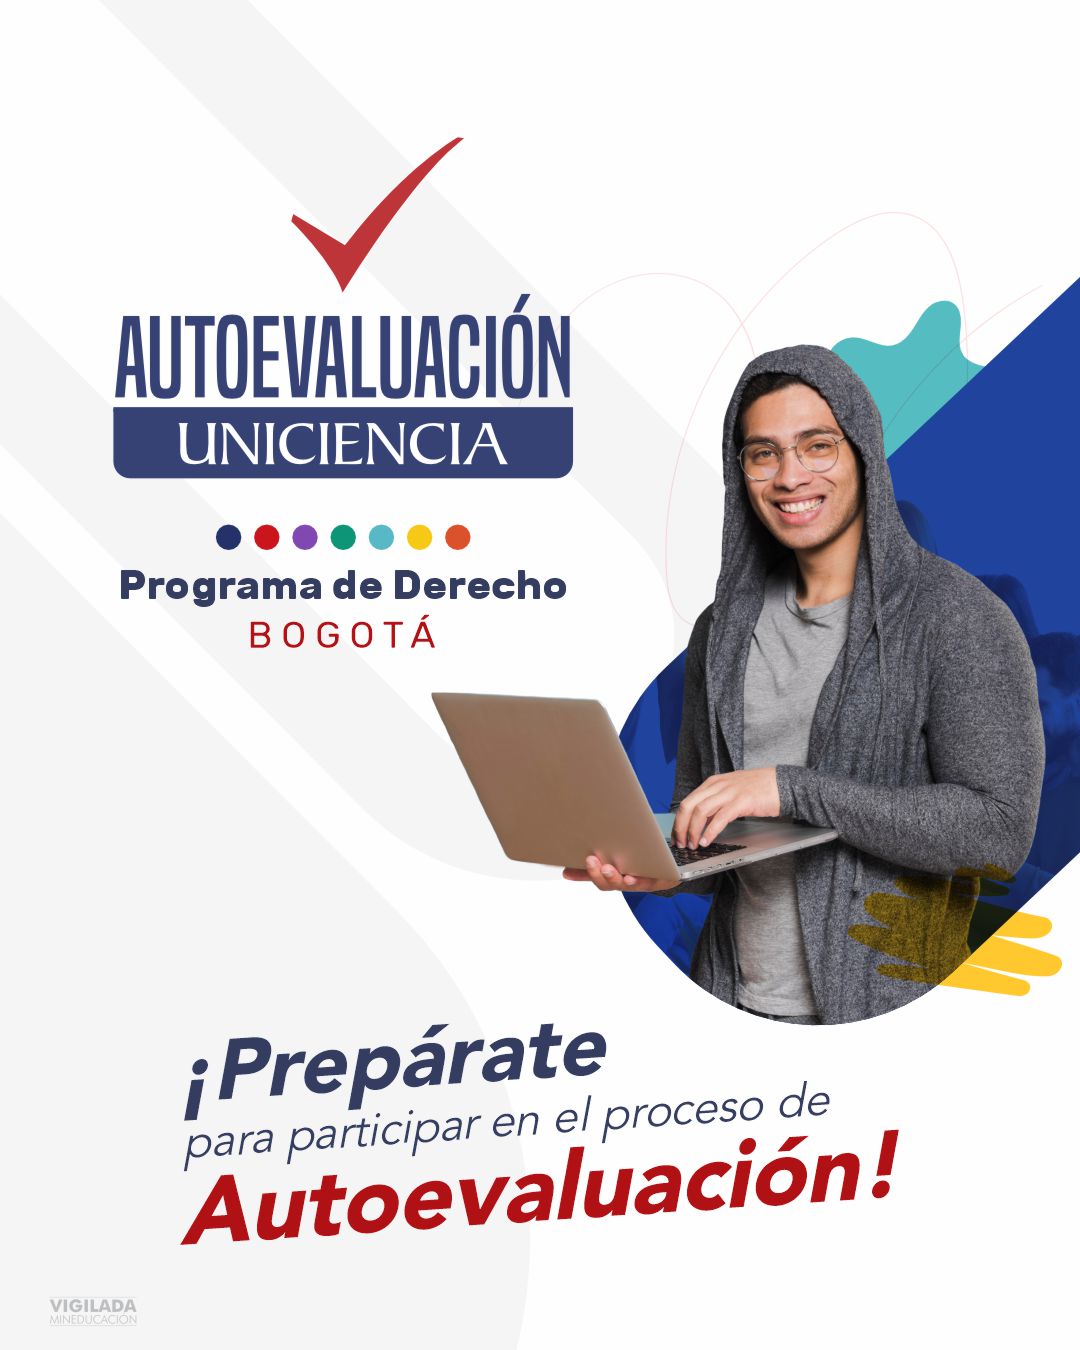 Proceso de autoevaluación - Programa de Derecho UNICIENCIA Bogotá